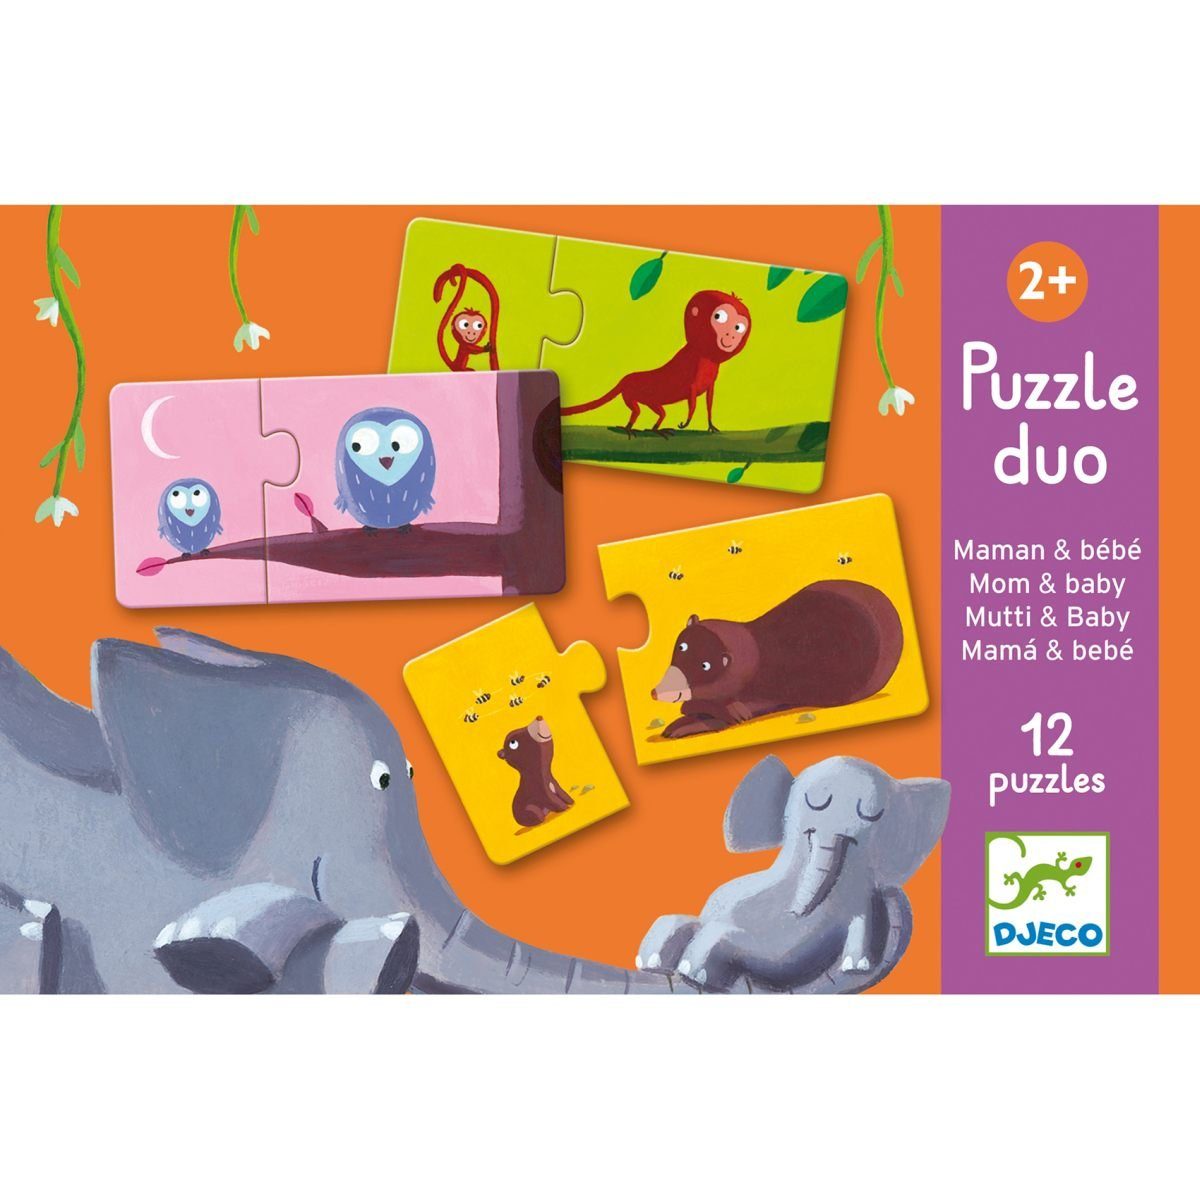 2 Assoziationsspiel Lernspiel DJECO für Jahren, ab Duo Puzzle Puzzle 2 Kinder Puzzleteile